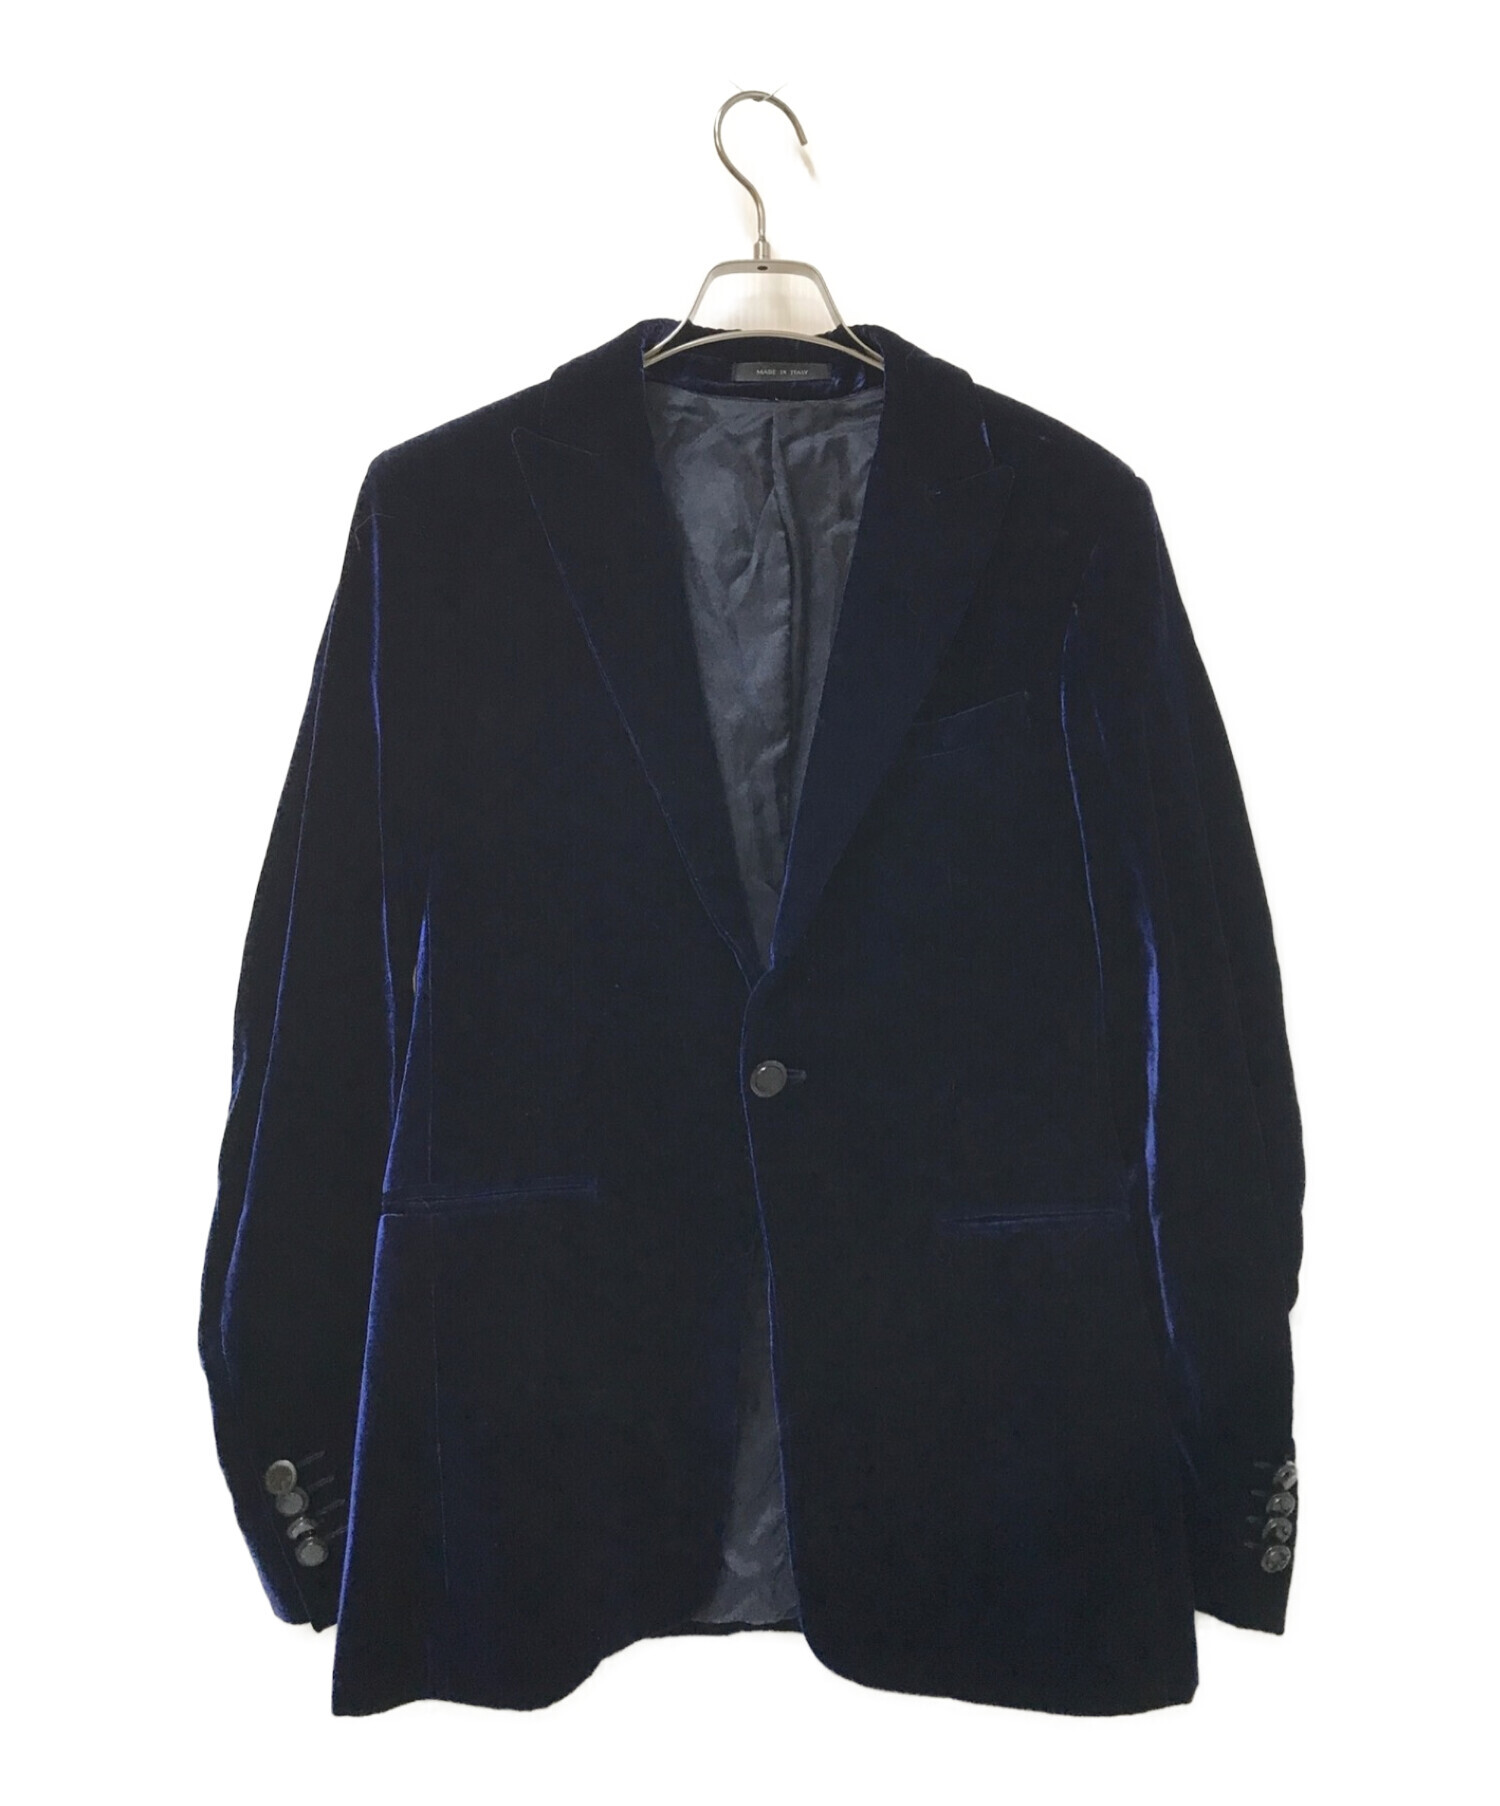 袖丈約62cmエンポリオアルマーニ ジャケット サイズ46 - ノーカラー 